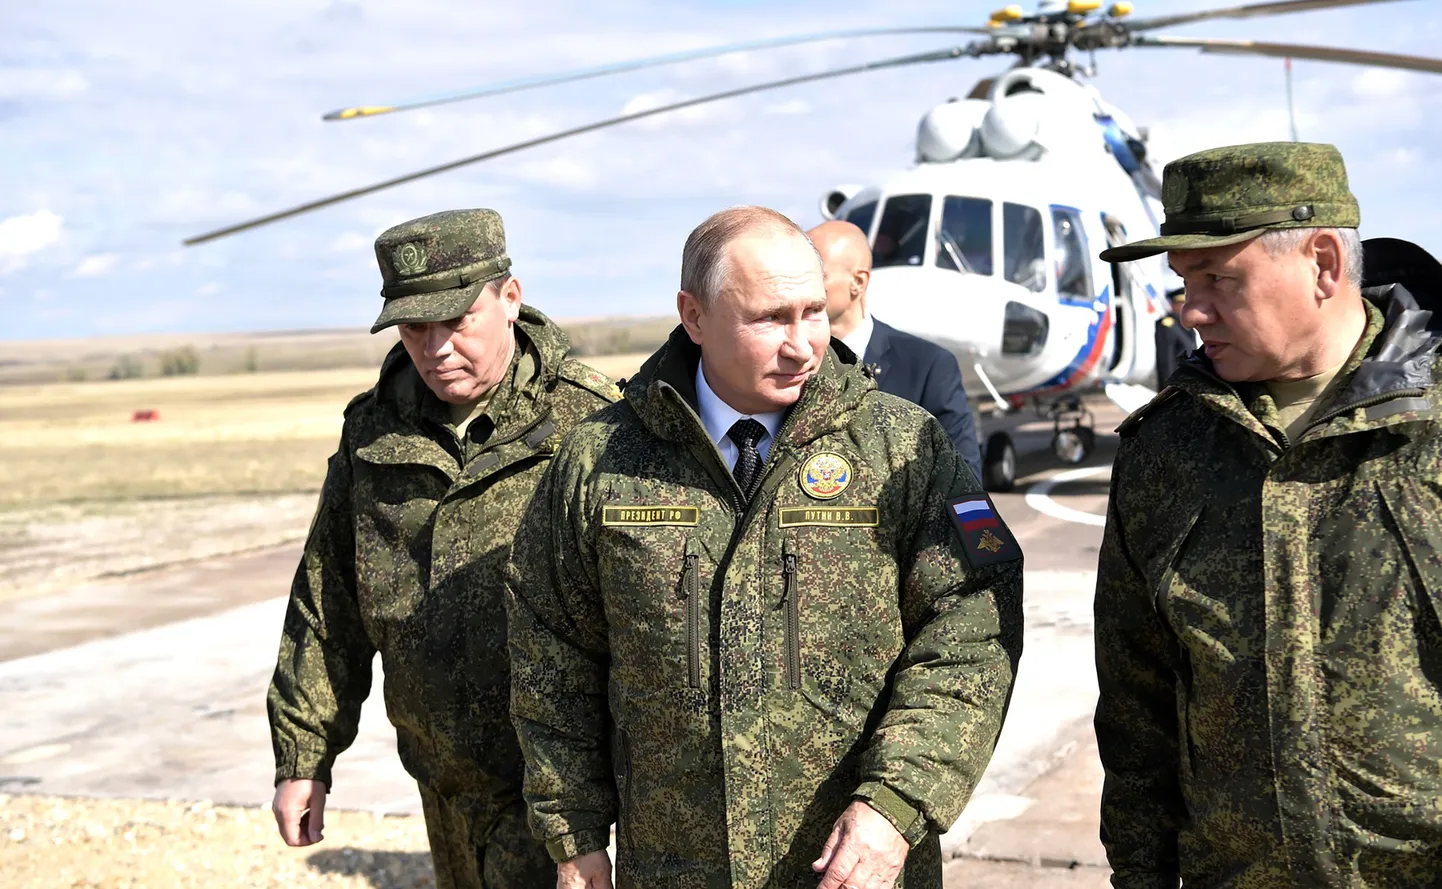 RASKE ÕPPUSTEL, KERGE LAHINGUS?  Vasakult kindral Valeri Gerassimov, riigipea Vladimir Putin ja minister Sergei Šoigu 2019. aastal strateegilistel õppustel “Tsentr-2019”.